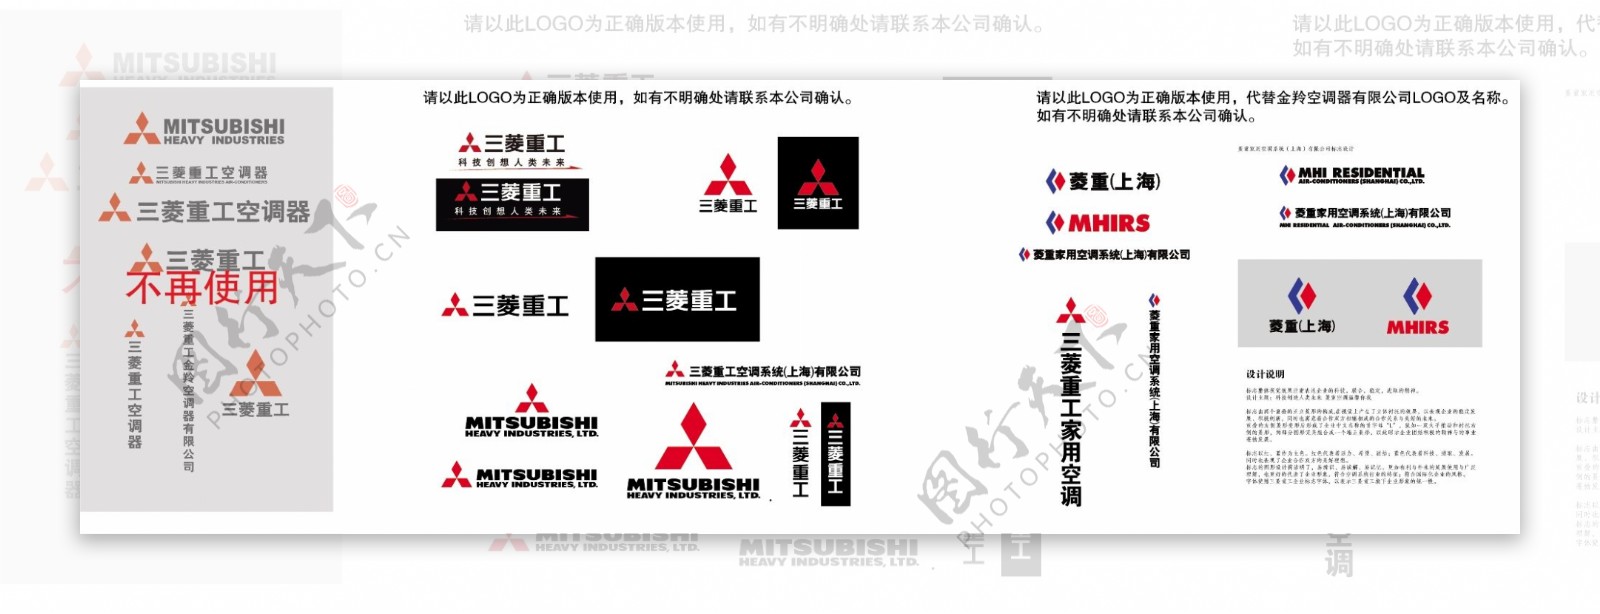 三菱logo正确组合图片